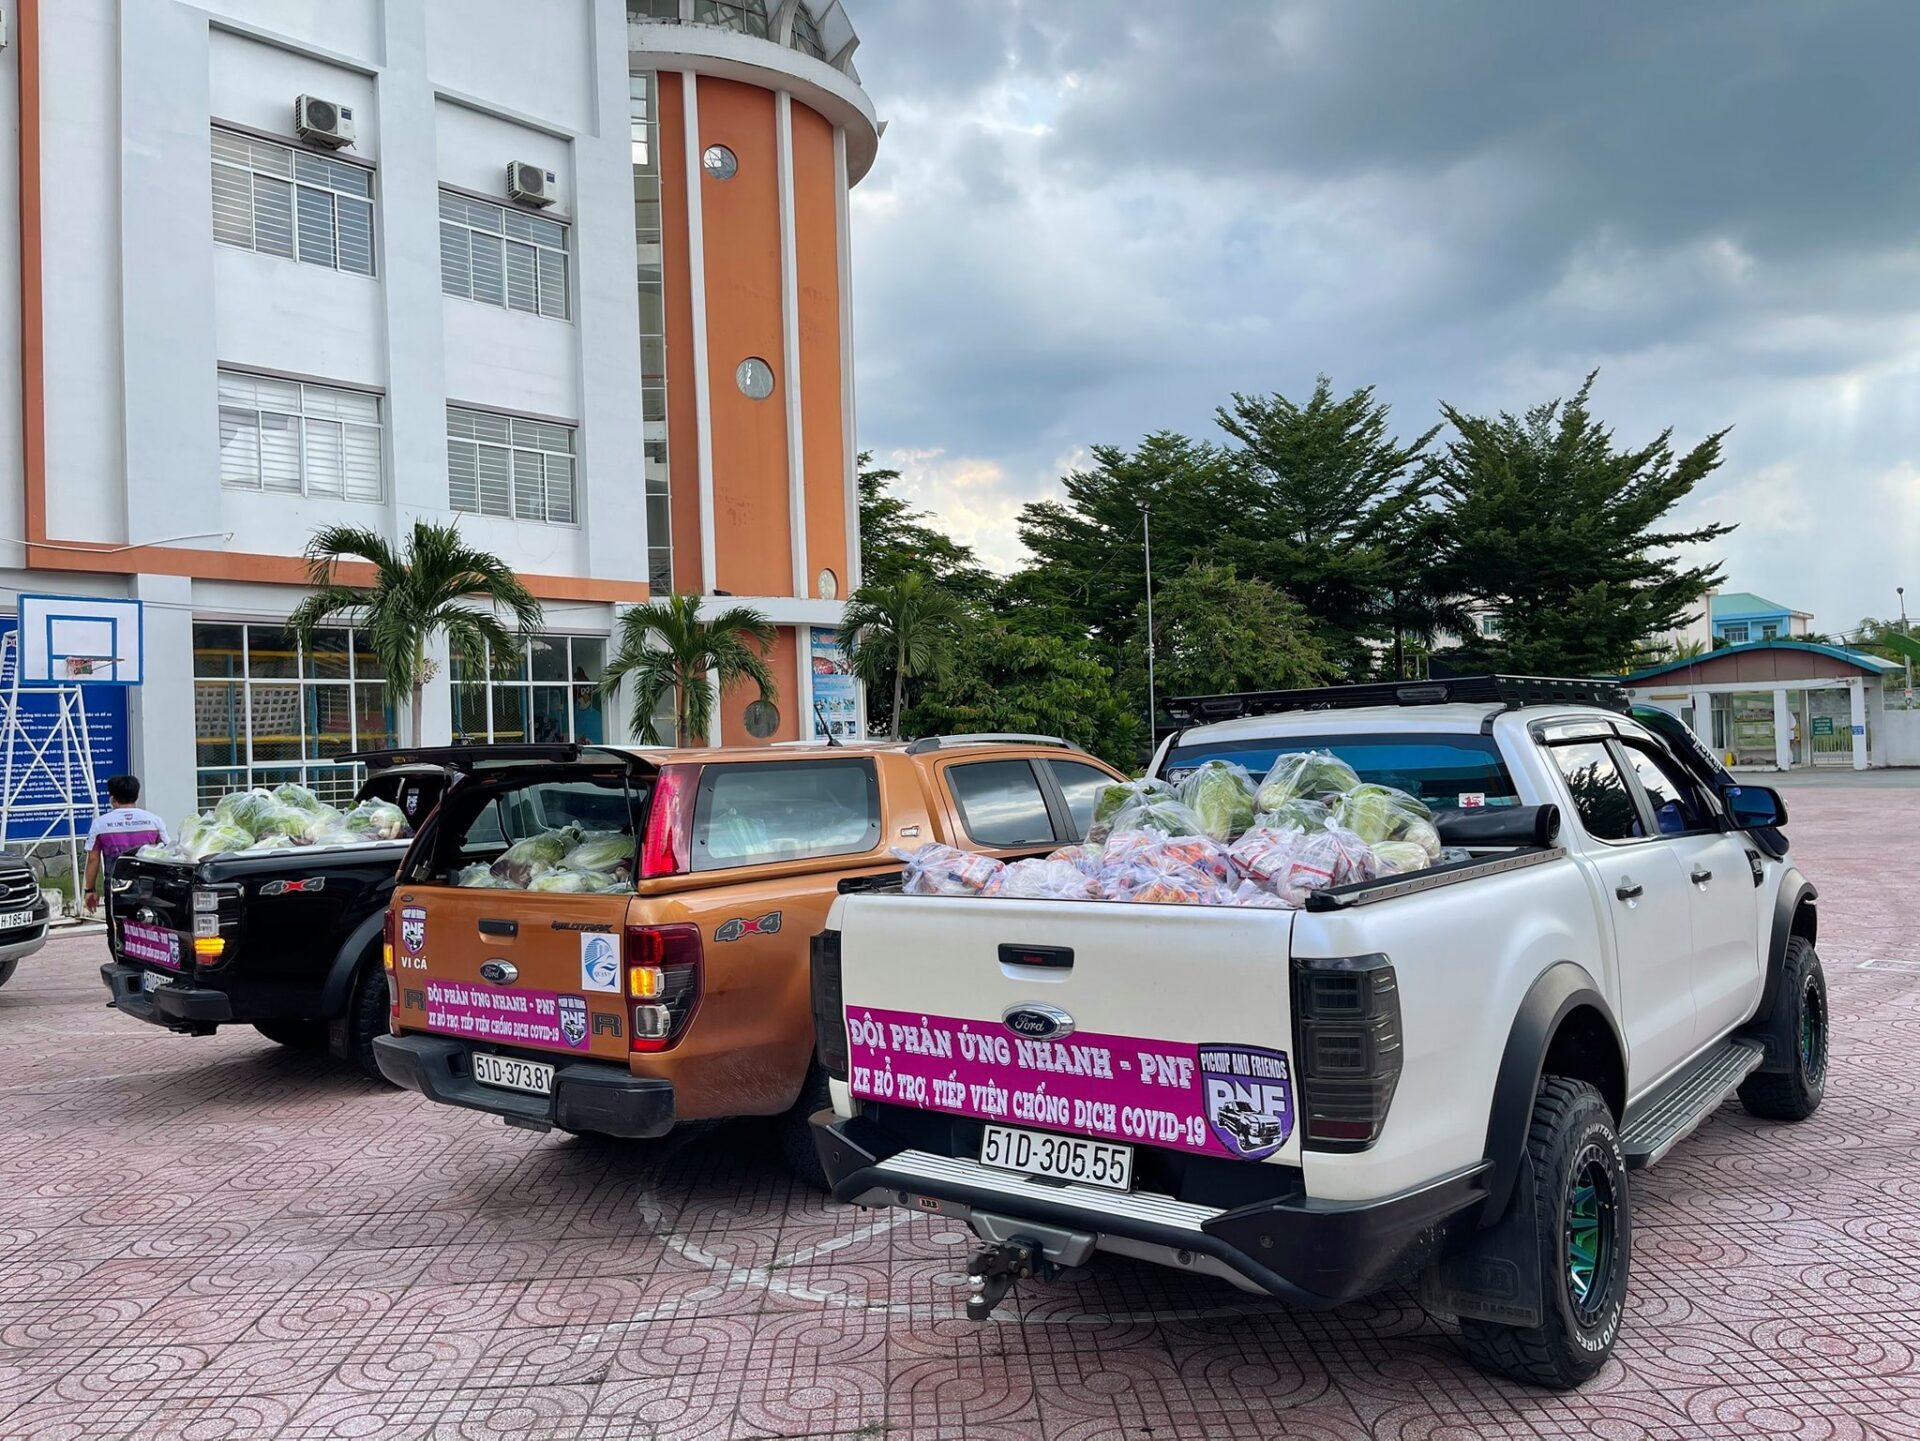 Ford Việt Nam: Chung tay gánh vác & chia sẻ hành trình, cùng cộng đồng đẩy lùi dịch bệnh